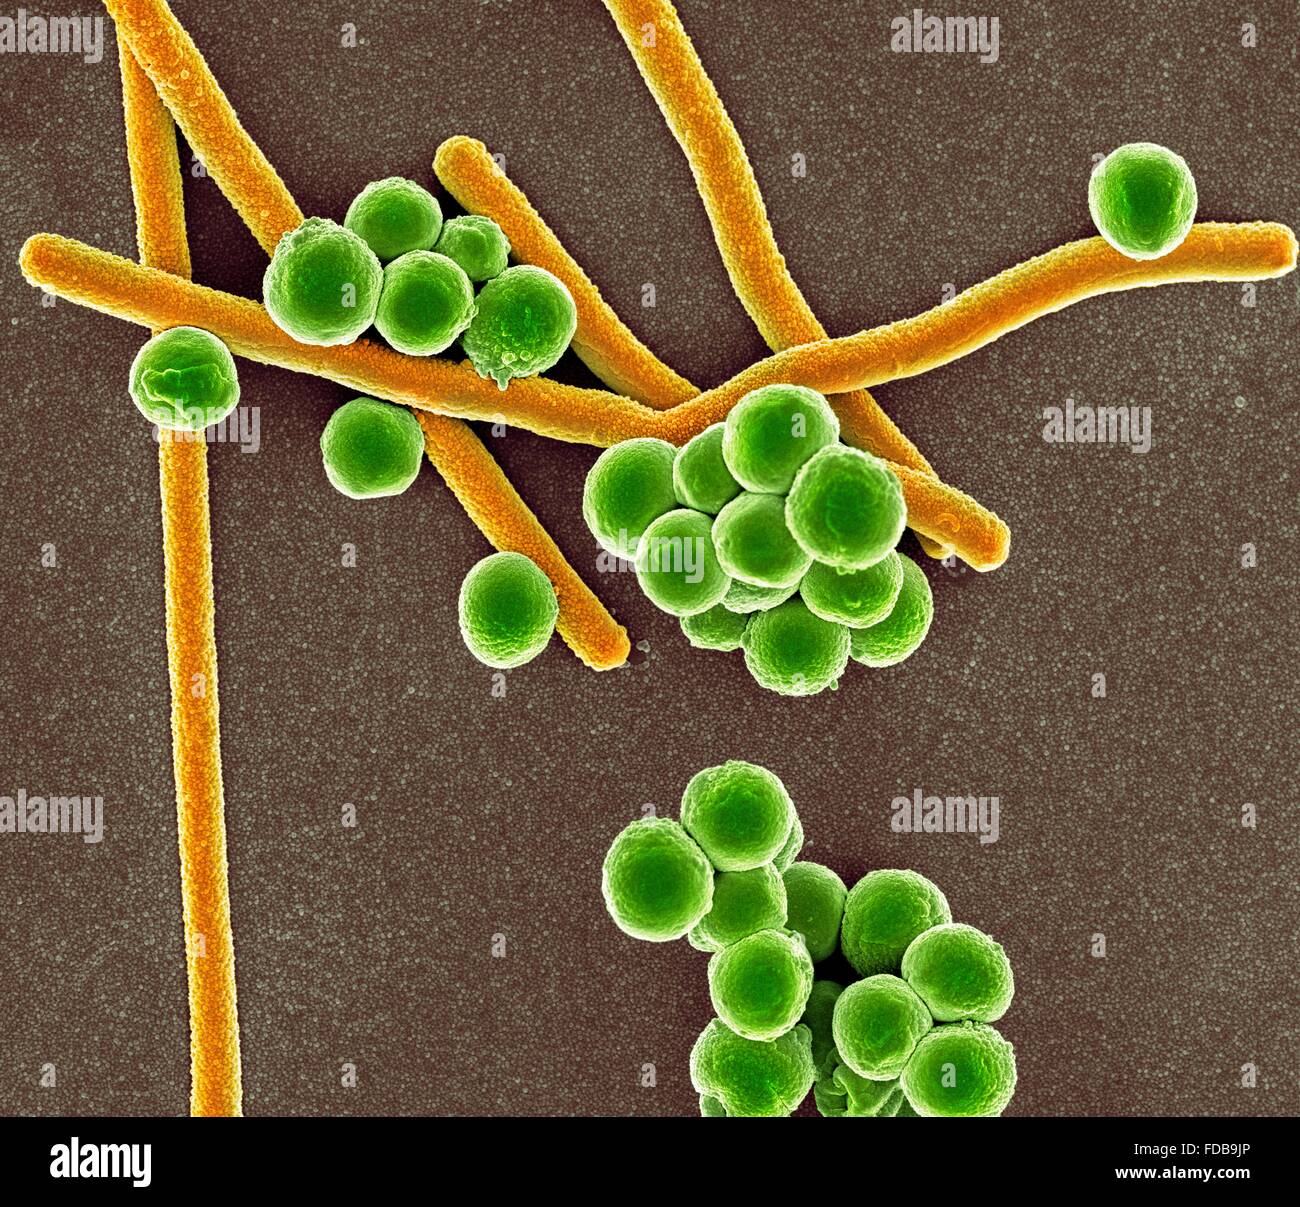 Farbige scanning Electron Schliffbild (SEM) von stabförmigen (Bacillus) und rund (Coccus) Bakterien. Stockfoto